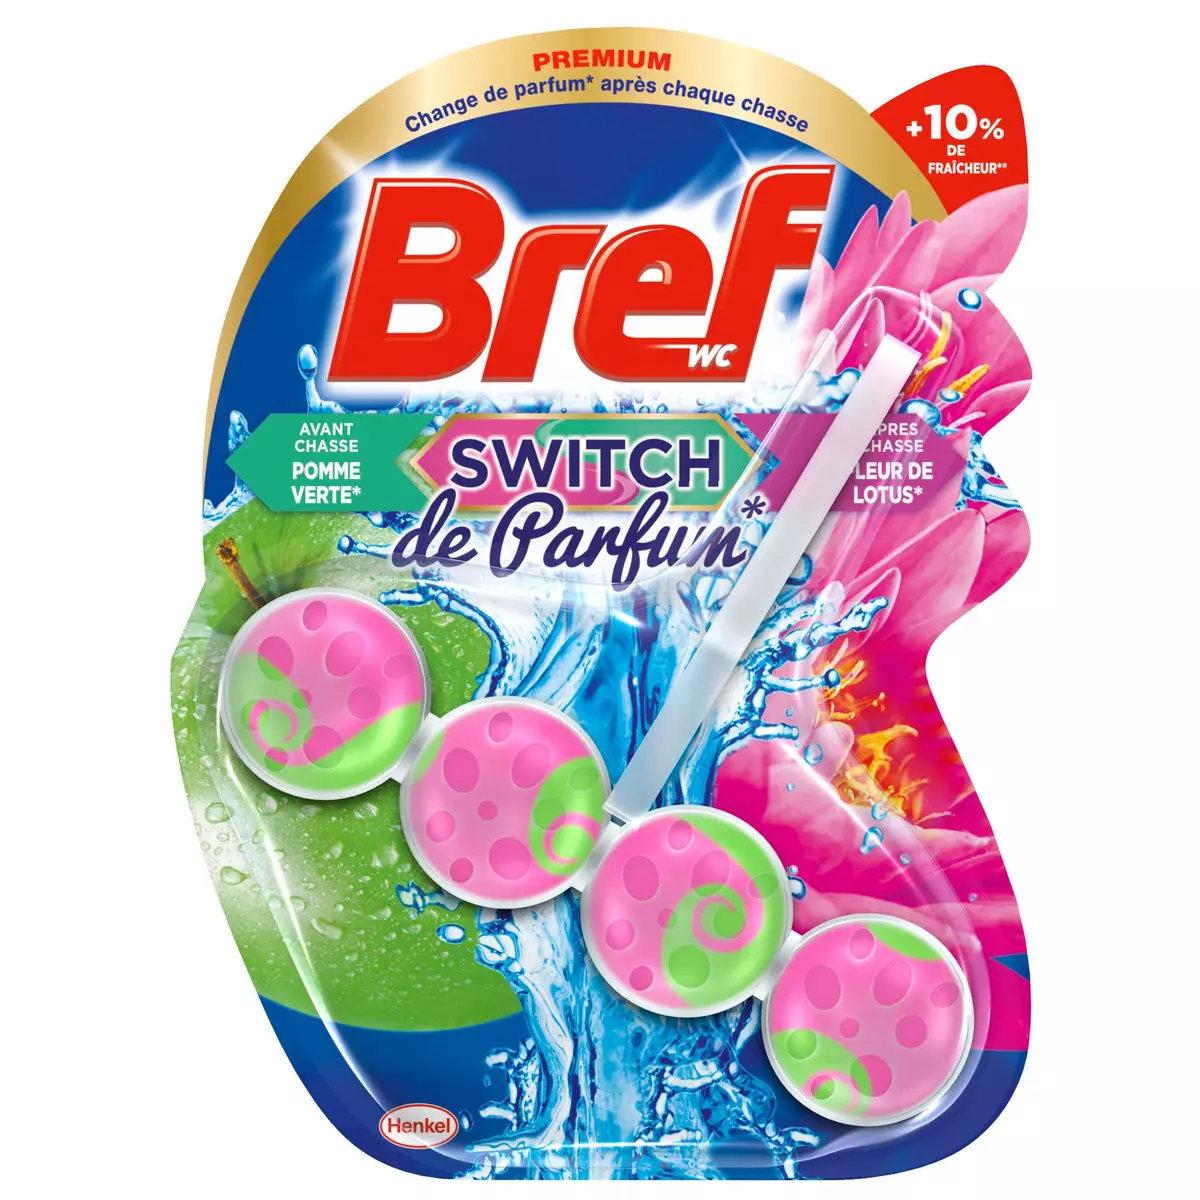 BREF WC Bloc switch de parfum pomme verte & fleur de lotus 1 bloc